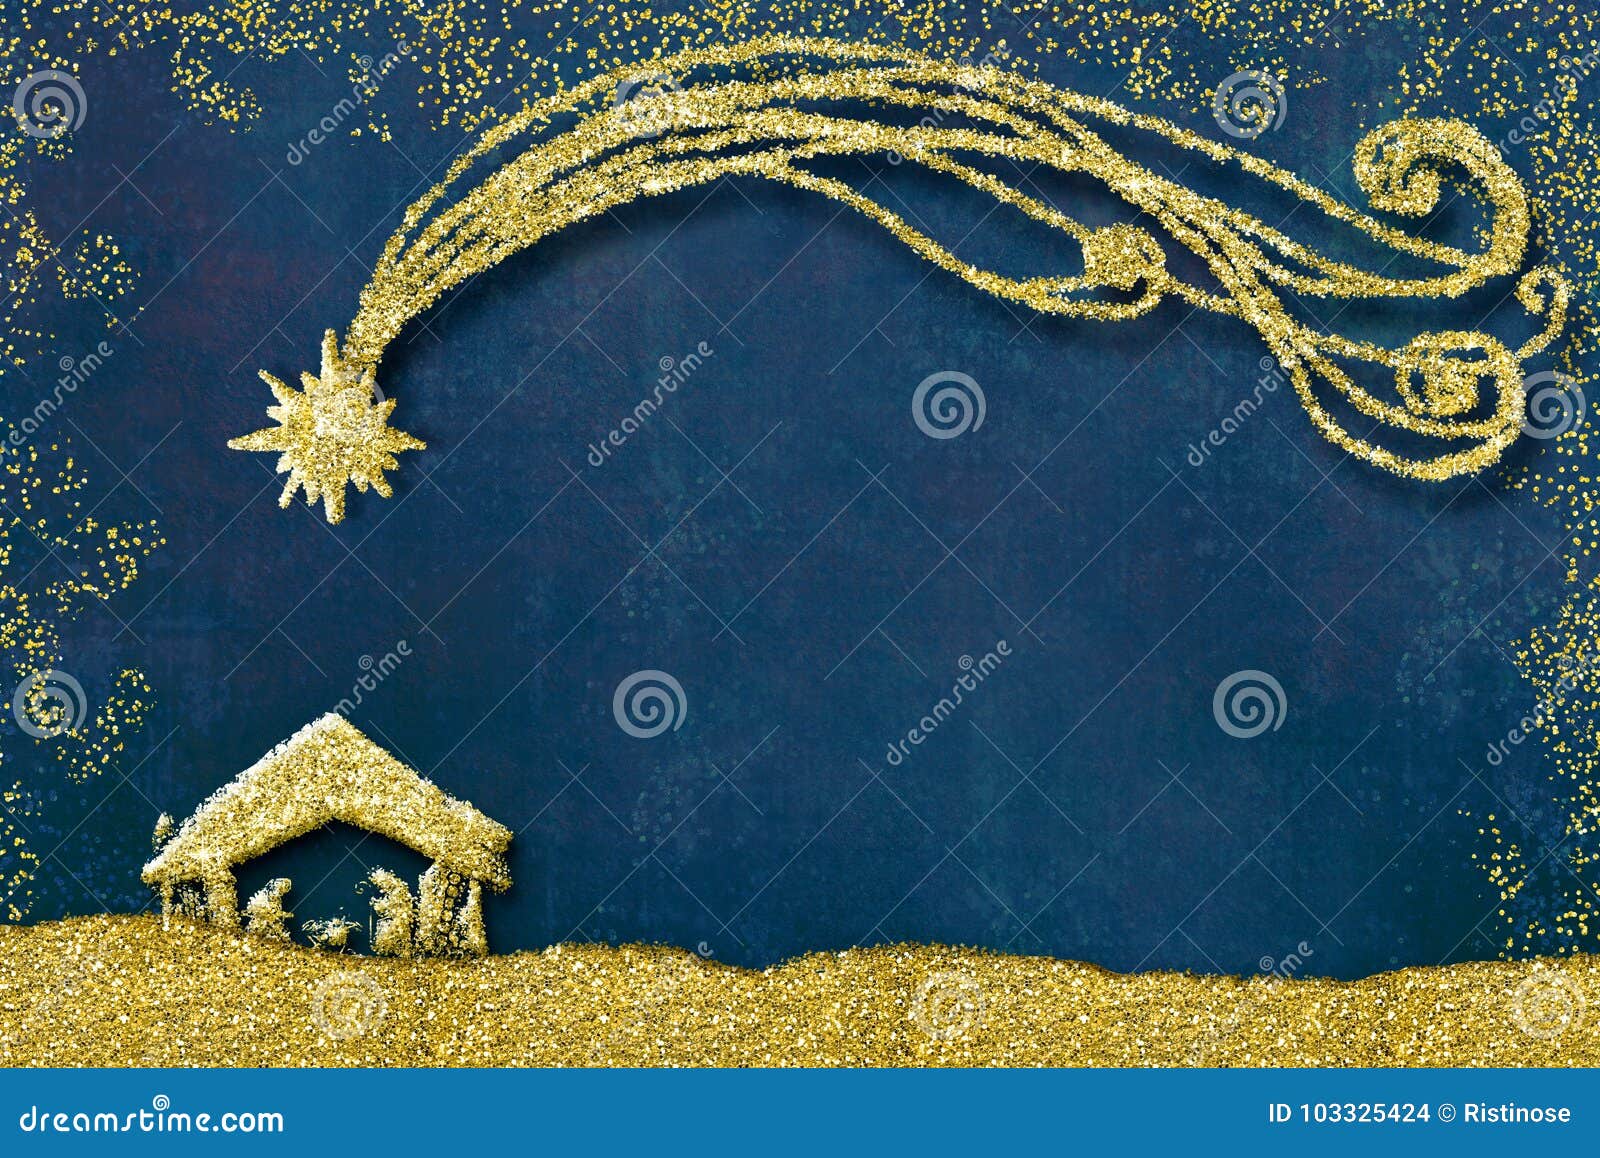 Immagini Natale Nativita.Cartoline D Auguri Di Scena Di Nativita Di Natale Illustrazione Di Stock Illustrazione Di Mary Santo 103325424